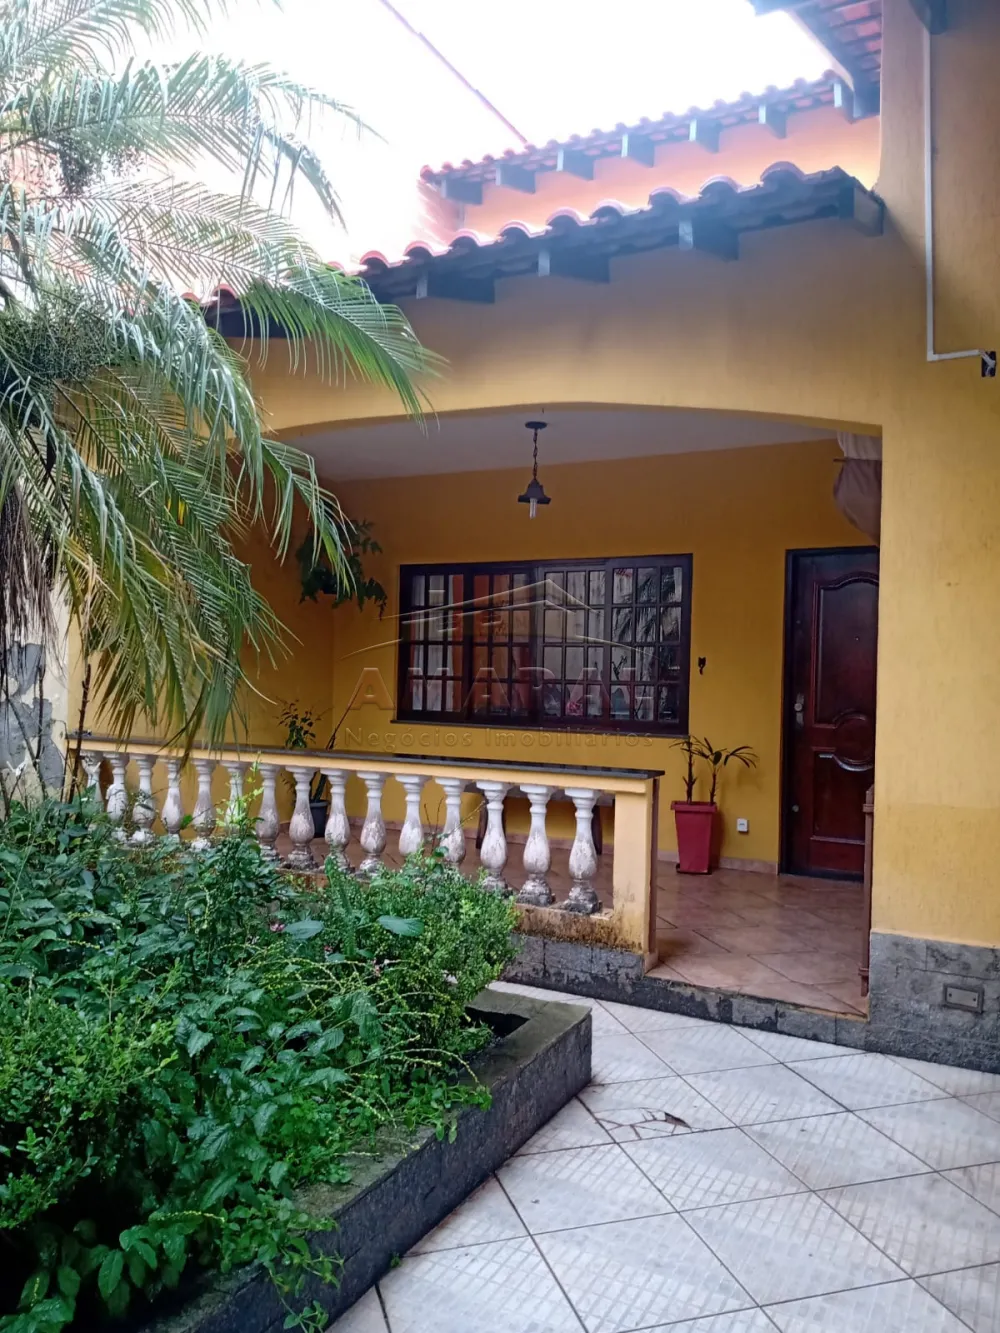 Comprar Casas / Térrea em Suzano R$ 750.000,00 - Foto 1